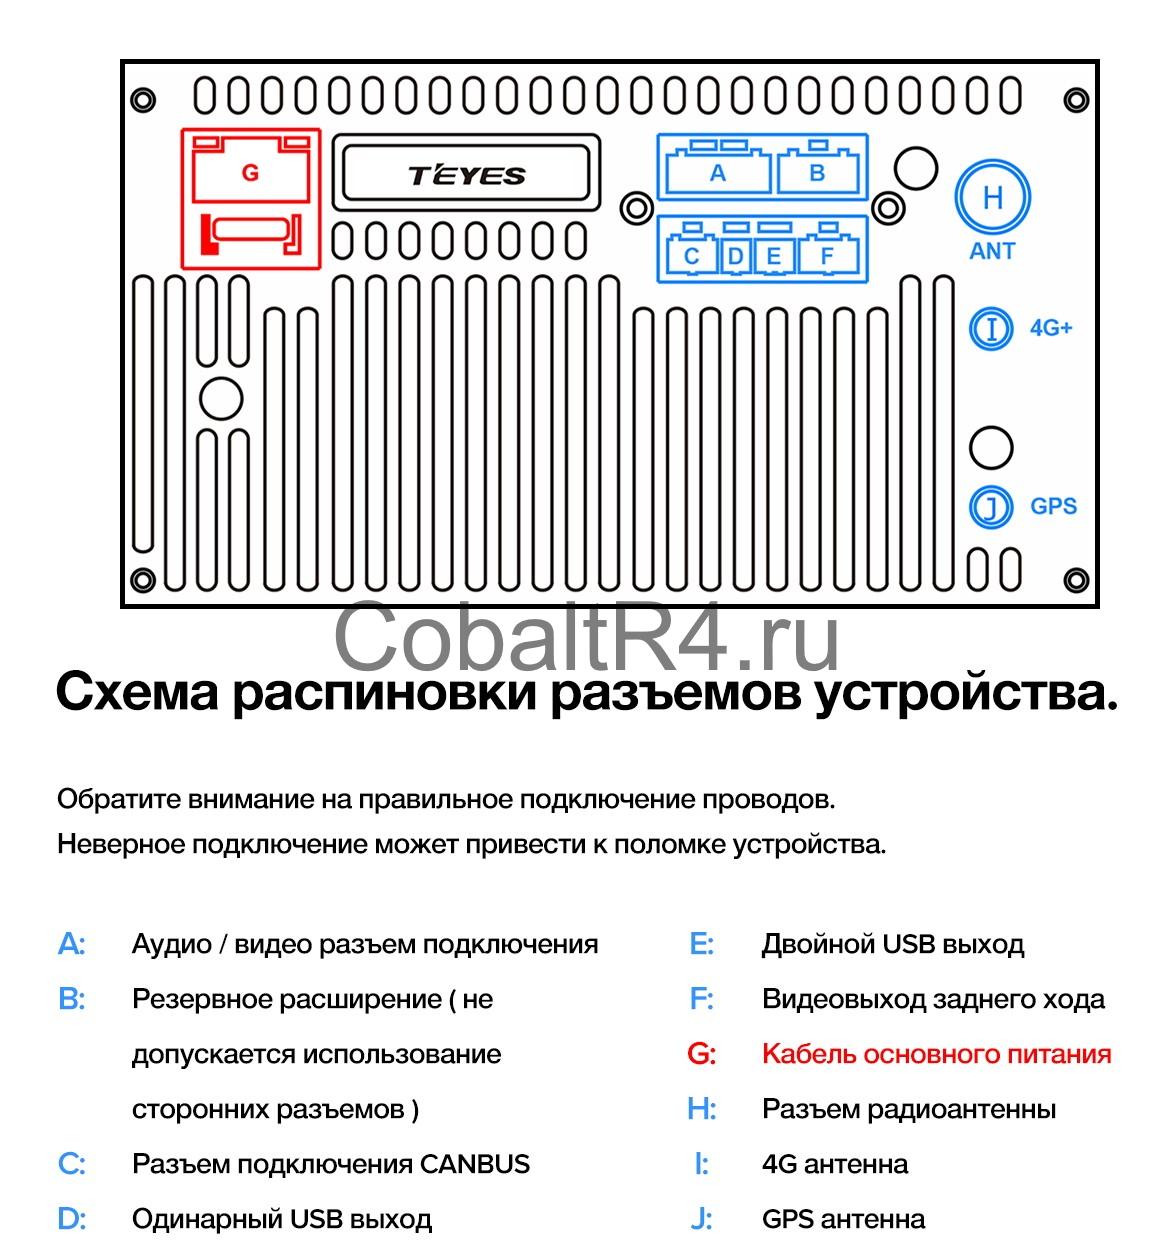 Как подключить камеру teyes. Схема распиновки магнитолы Teyes cc2. 4g антенна для магнитолы Teyes. Teyes cc2 Plus разъемы. Teyes.ru схема подключения сс3.